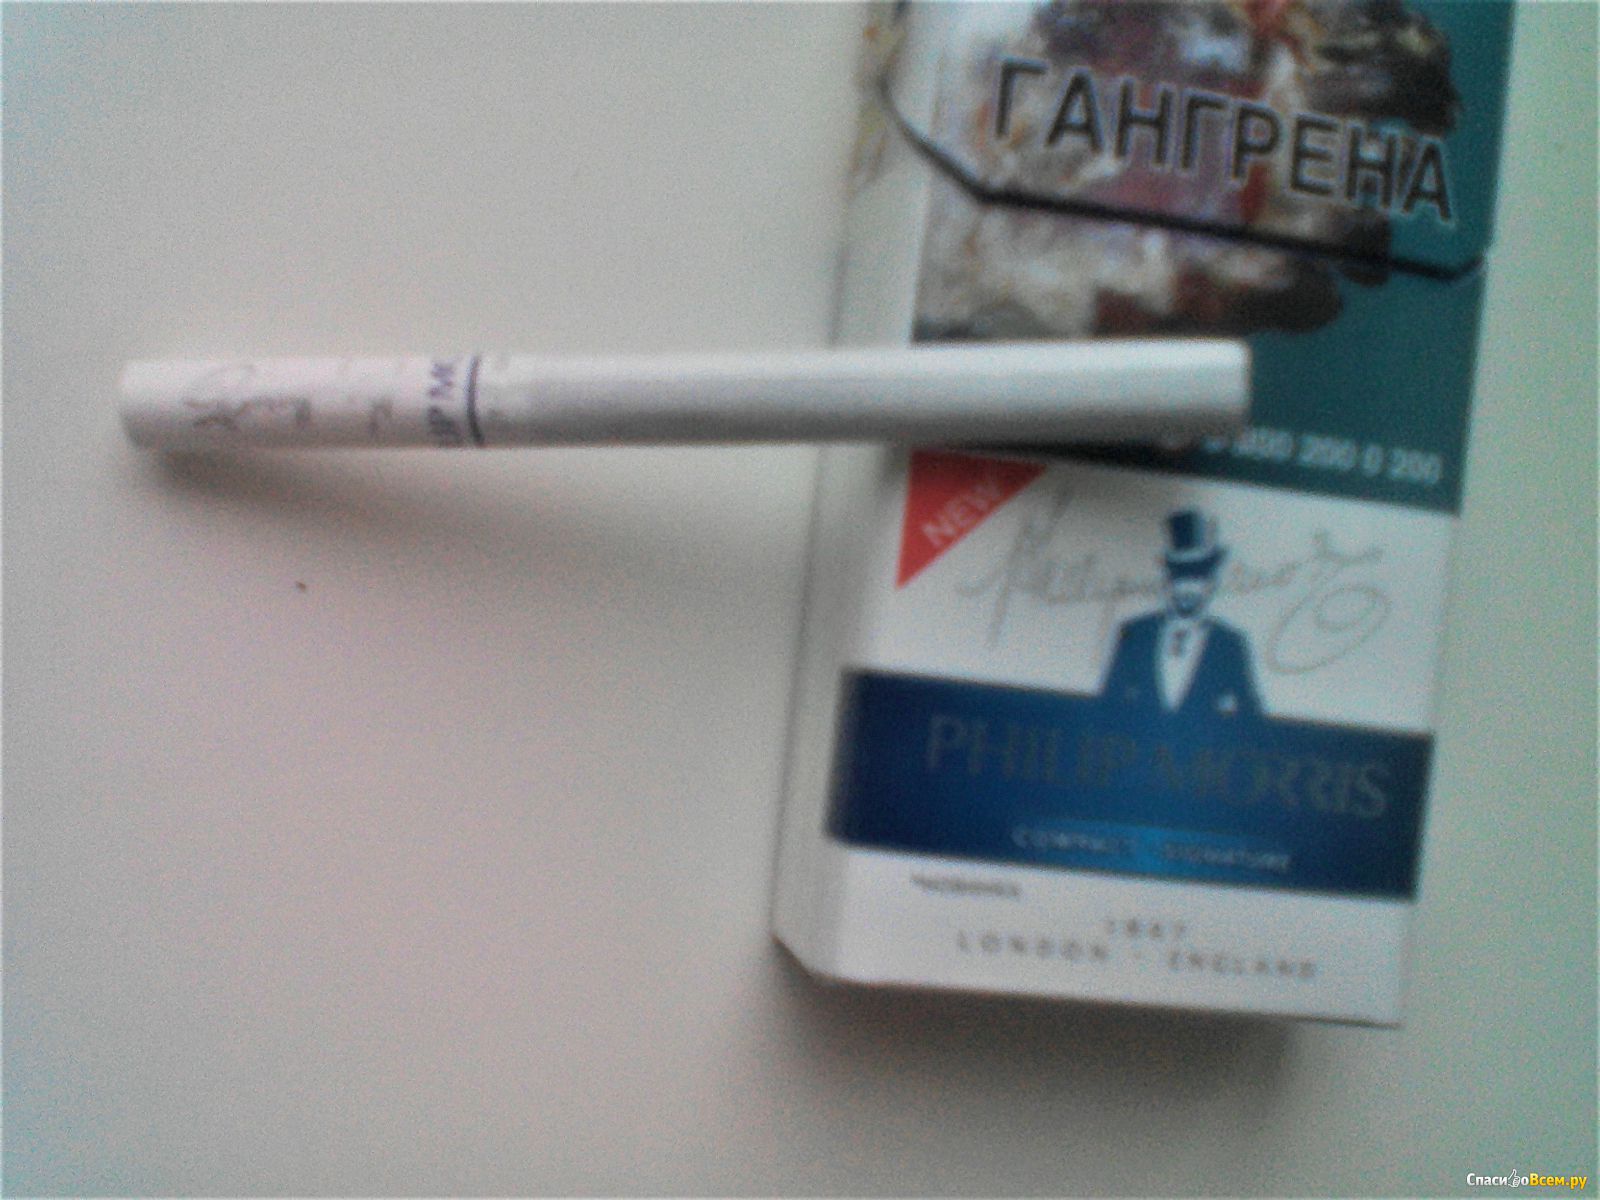 Филип моррис компакт. Сигареты Филип Моррис компакт. Сигареты Philip Morris Compact Blue. Philip Morris Compact Signature.